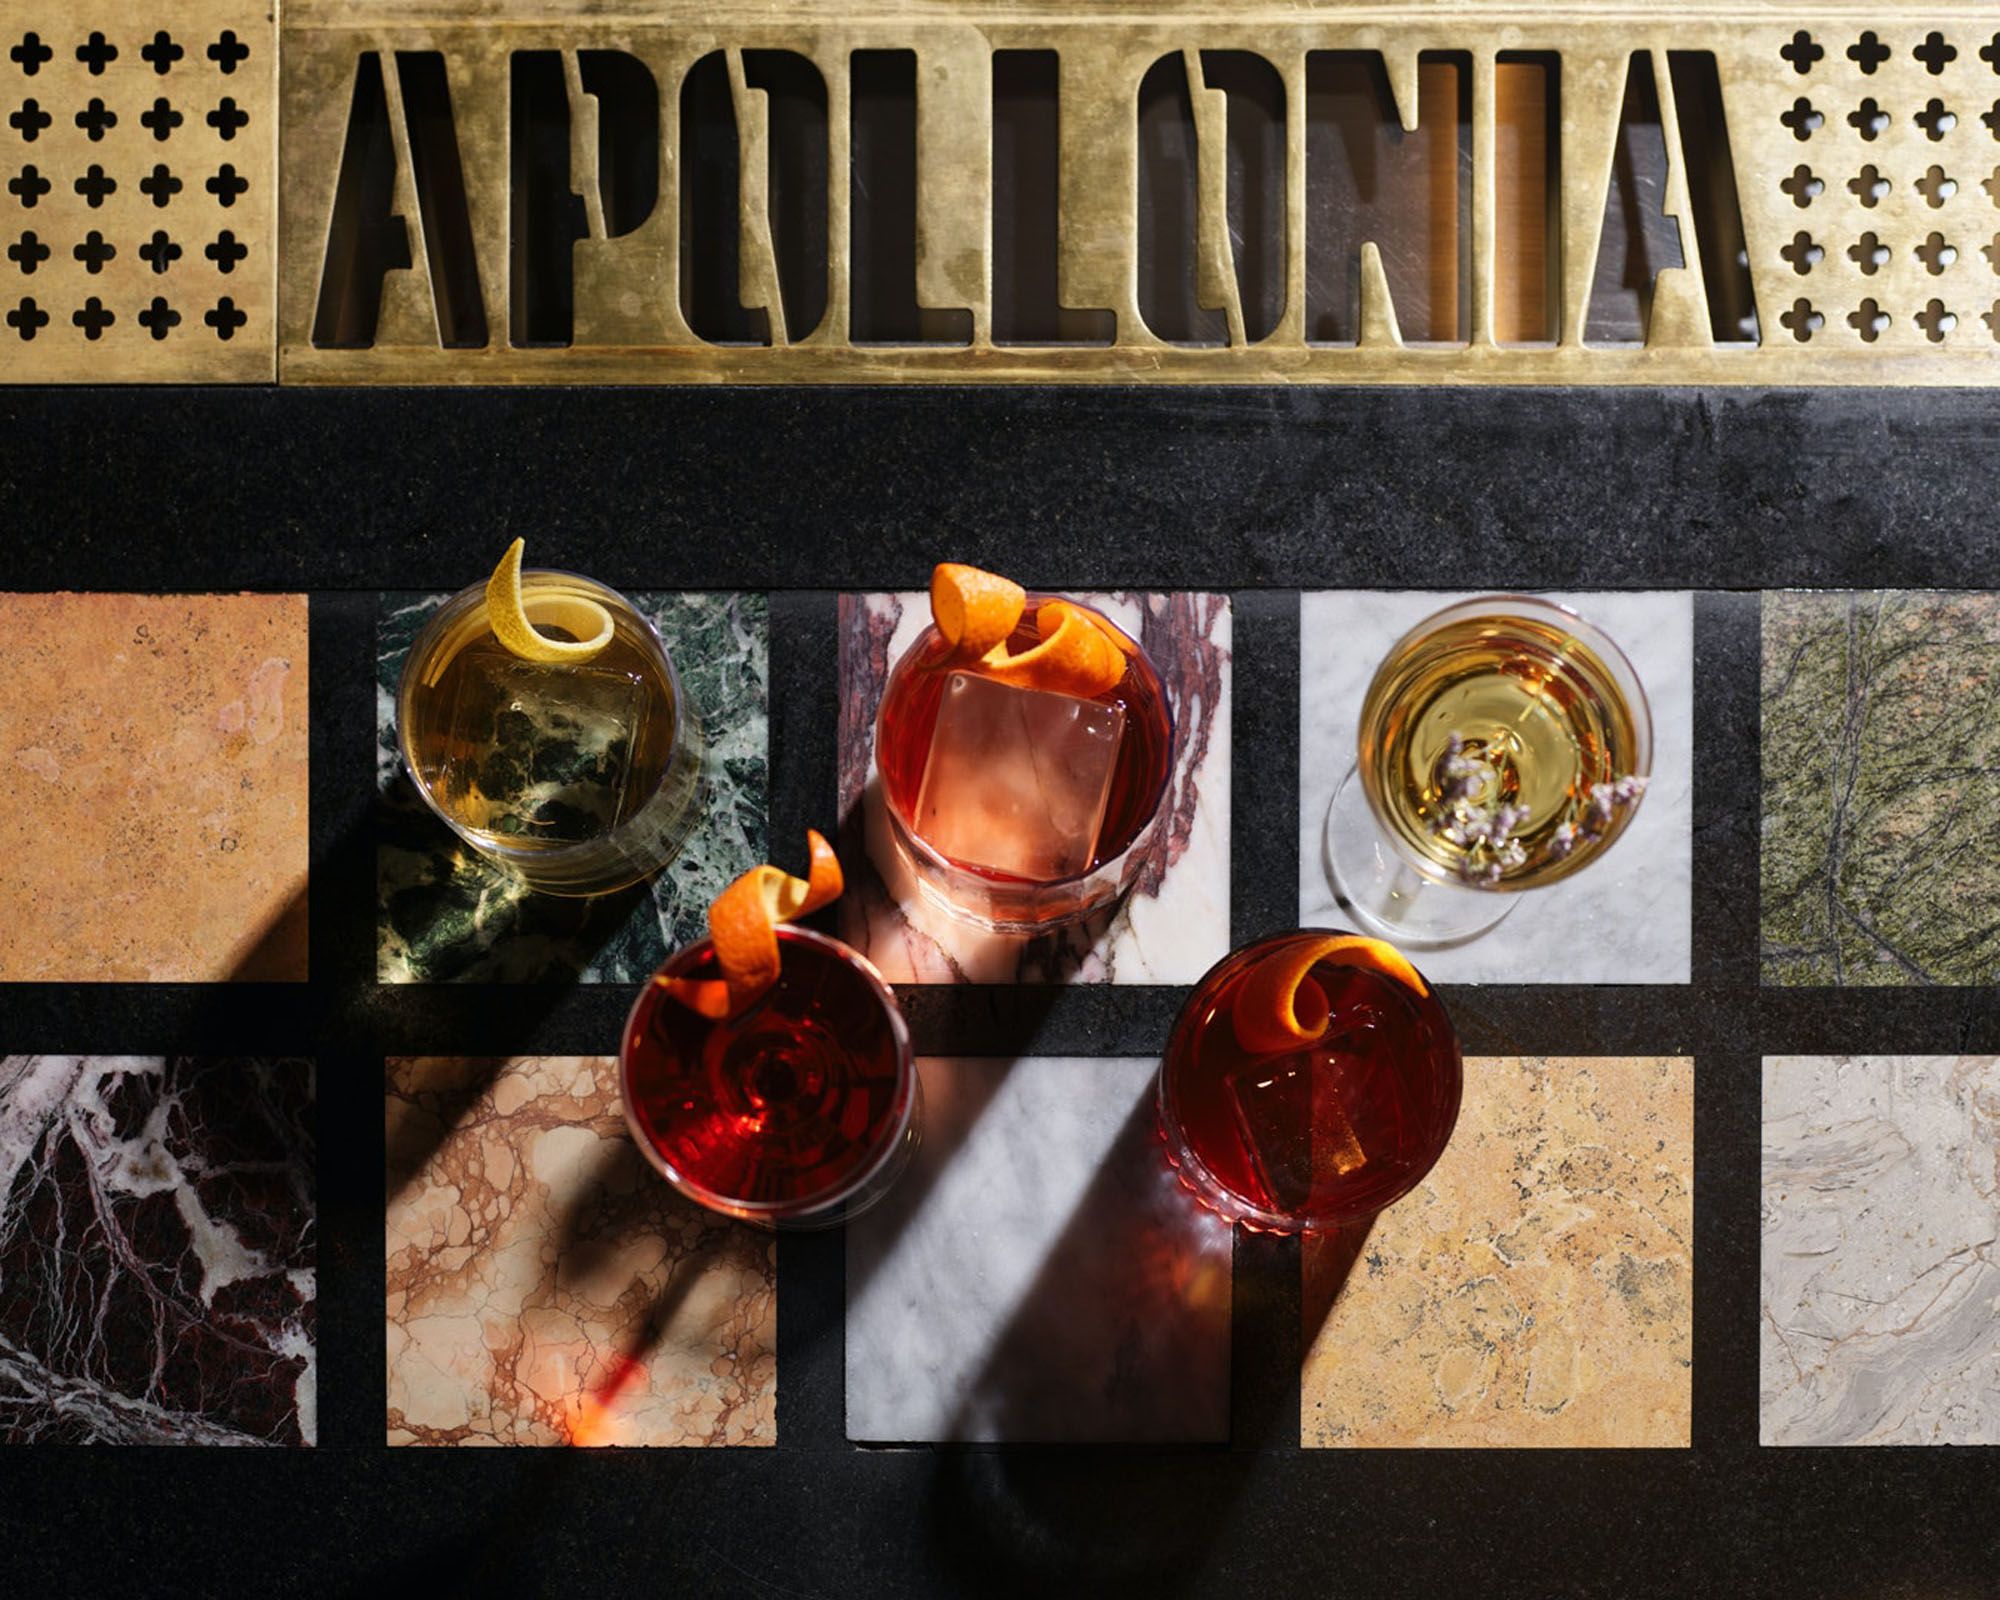 Apollonia. Photo: Supplied